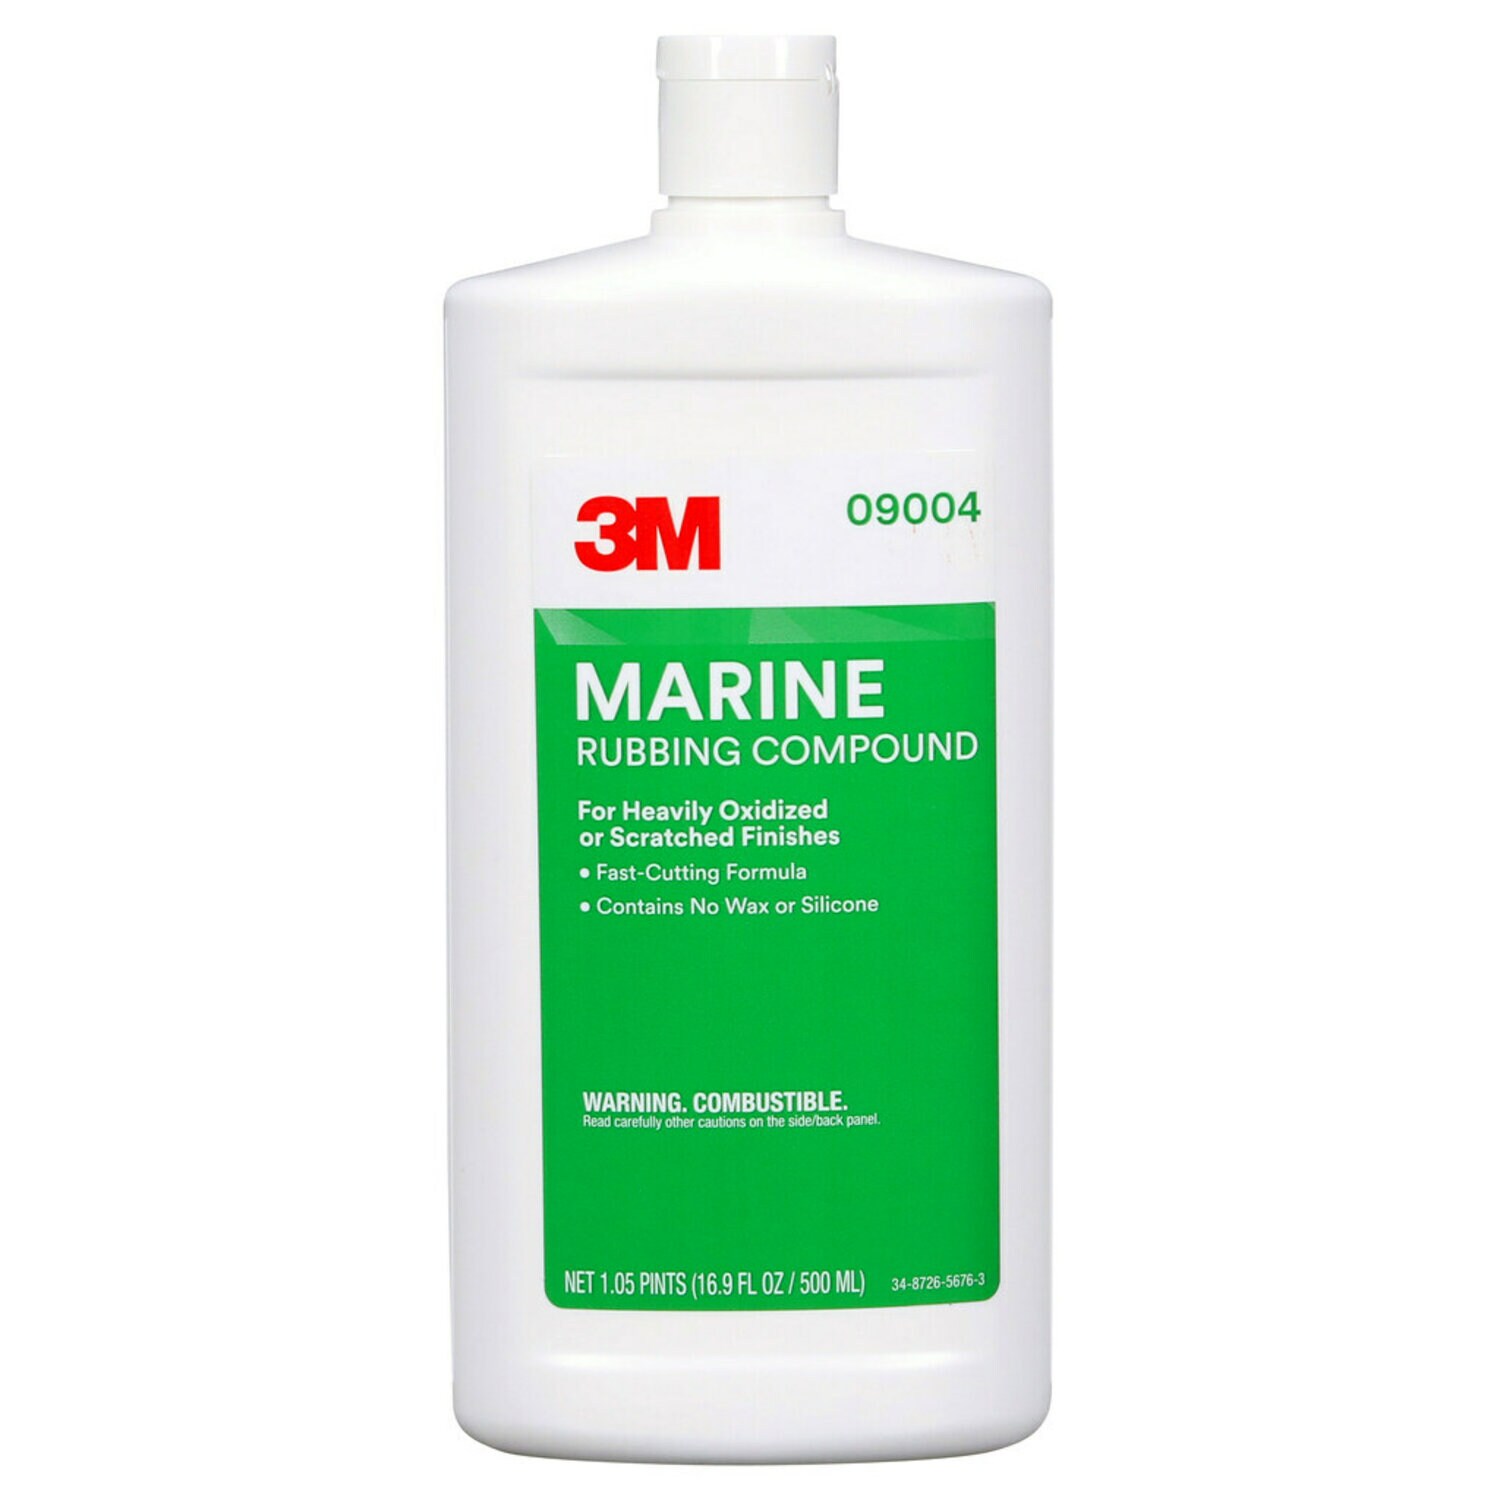 7000045757 - 3M Marine Rubbing Compound, 09004, 16.9 fl oz (500 mL), 6 per case